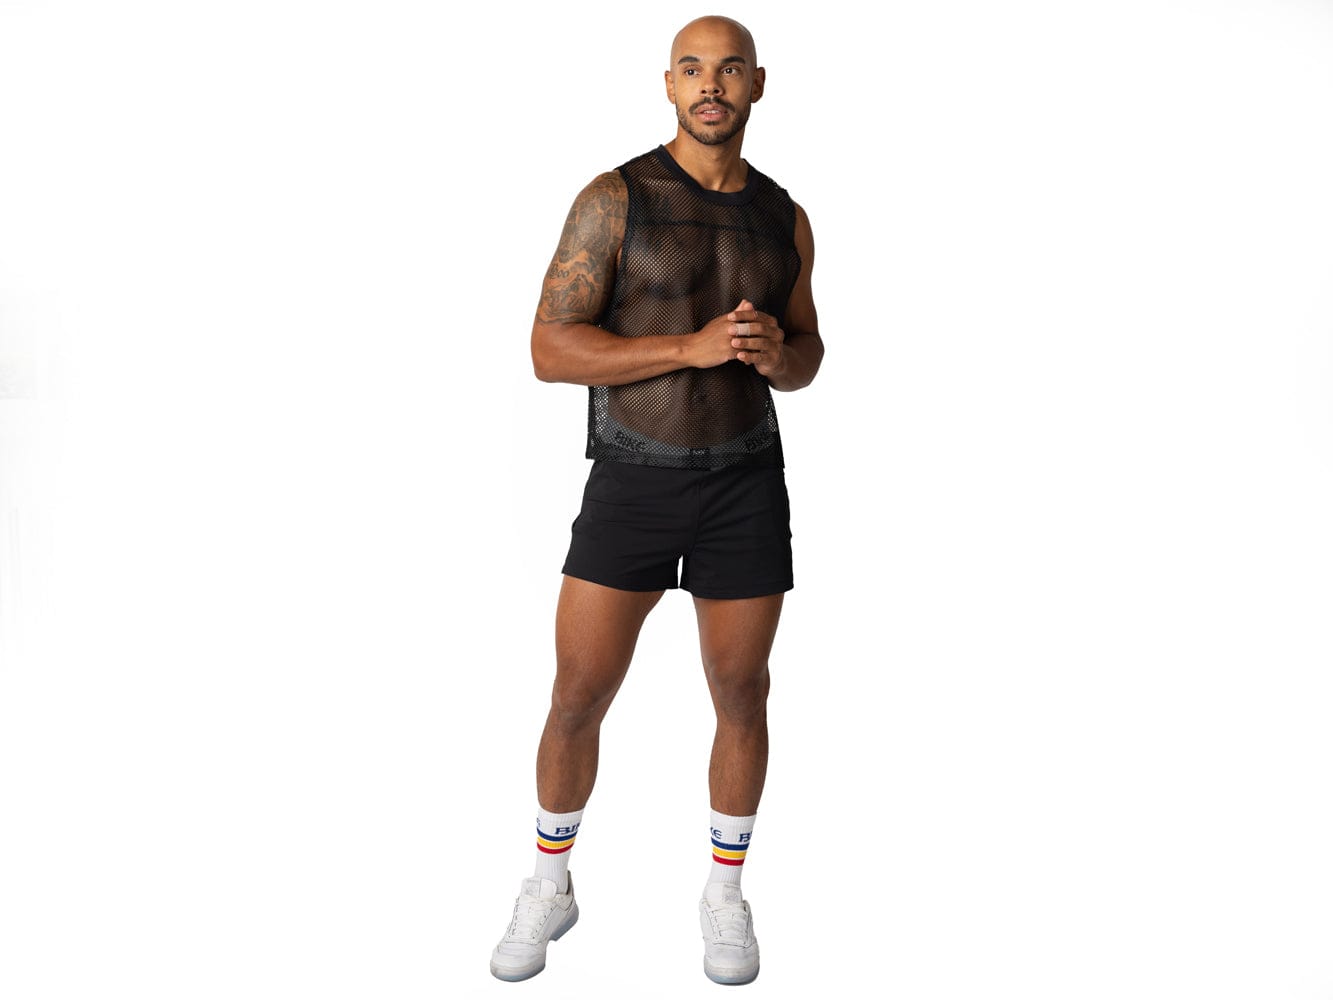 Man wearing black BIKE® sleeveless mesh shirt